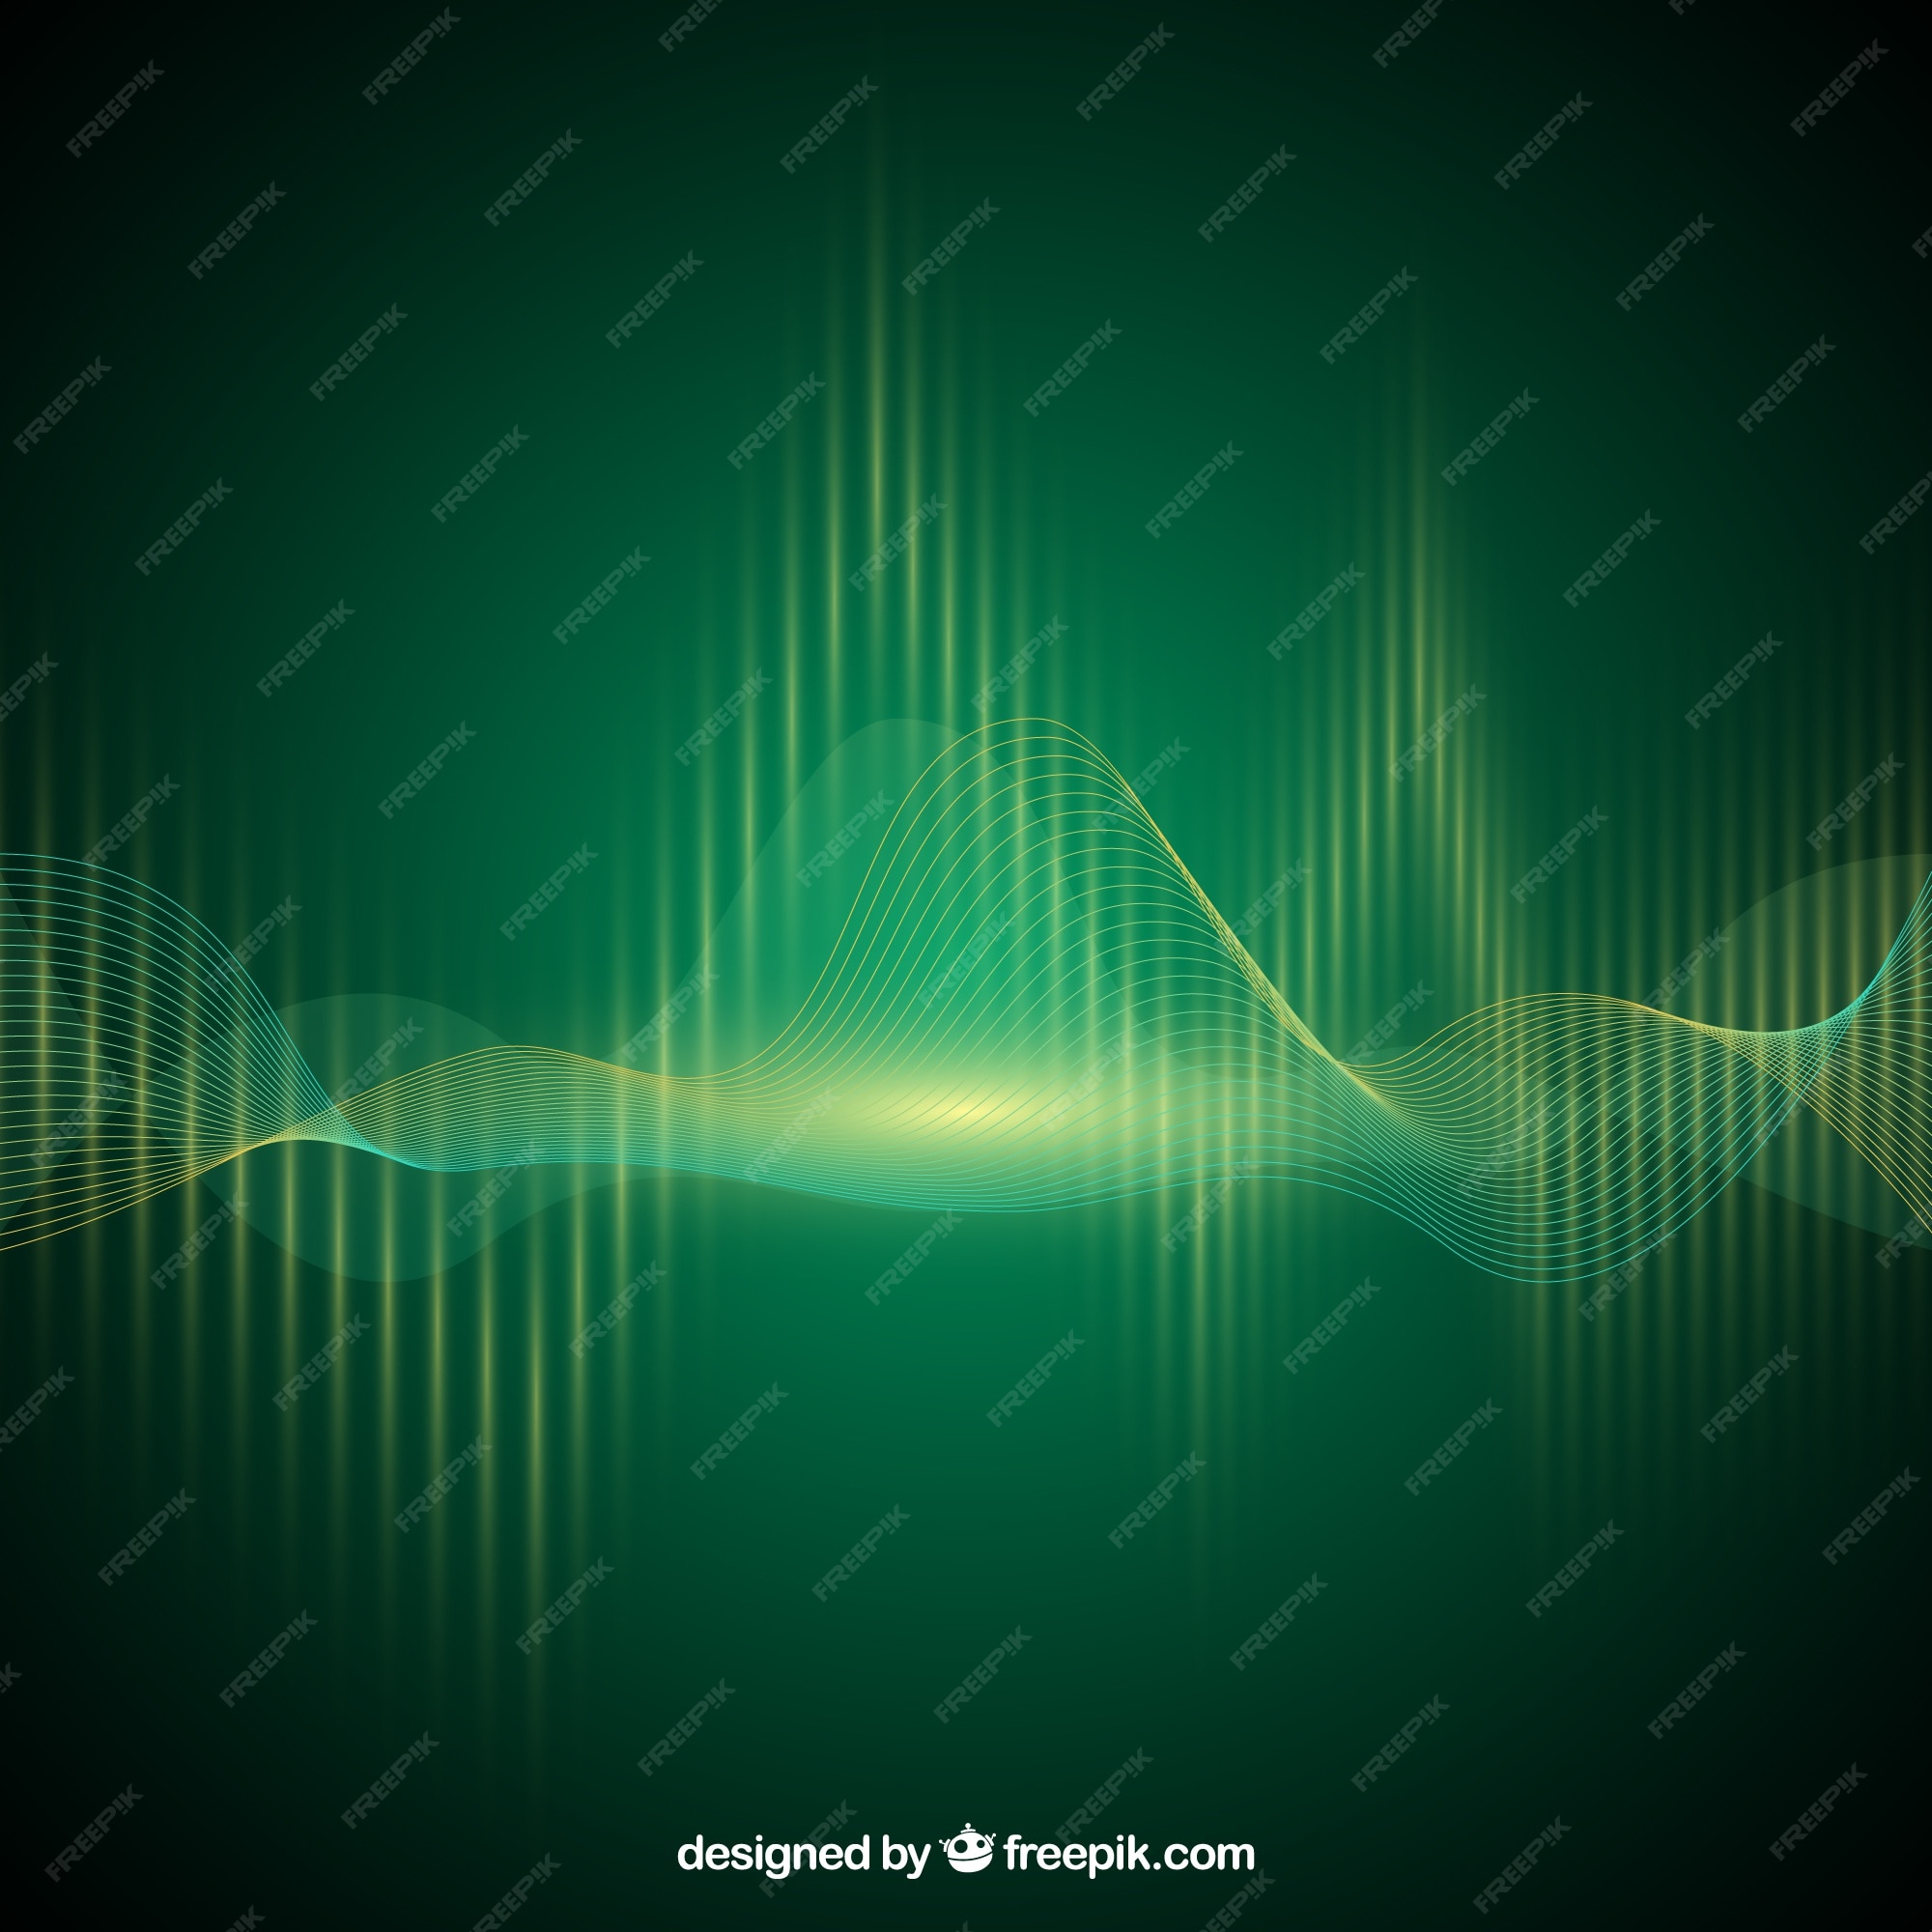 Sóng âm: Nếu bạn yêu thích khoa học và muốn khám phá về những biểu tượng quan trọng của nó, hãy xem những hình ảnh liên quan đến từ khóa sóng âm. Bạn sẽ hiểu rõ hơn về cách sóng và âm thanh hoạt động, cùng với những ứng dụng thực tiễn trong đời sống.